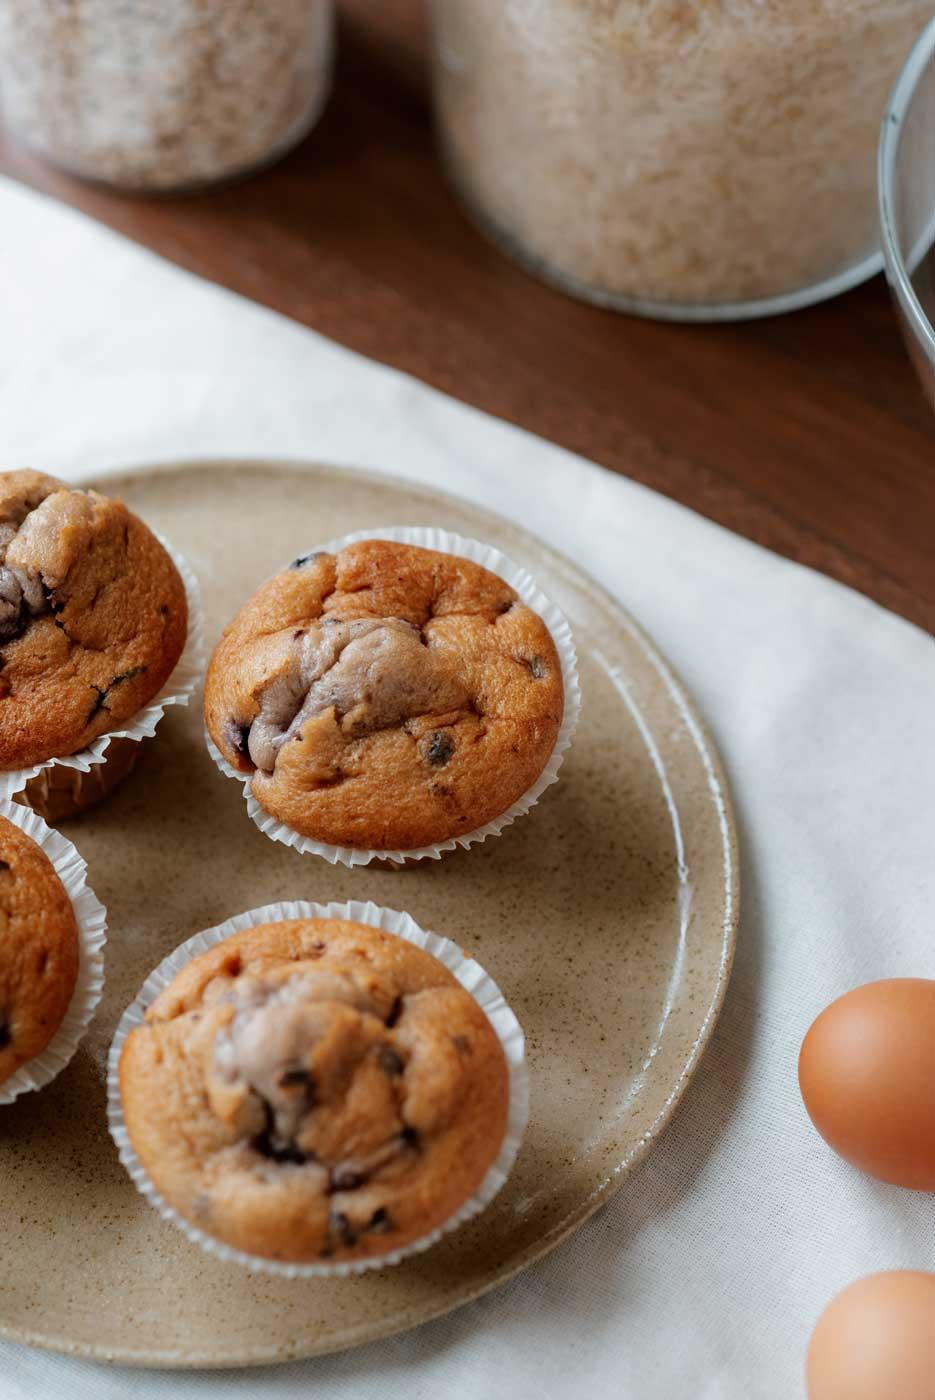 Muffins de pasas y coco rallado: una delicia saludable